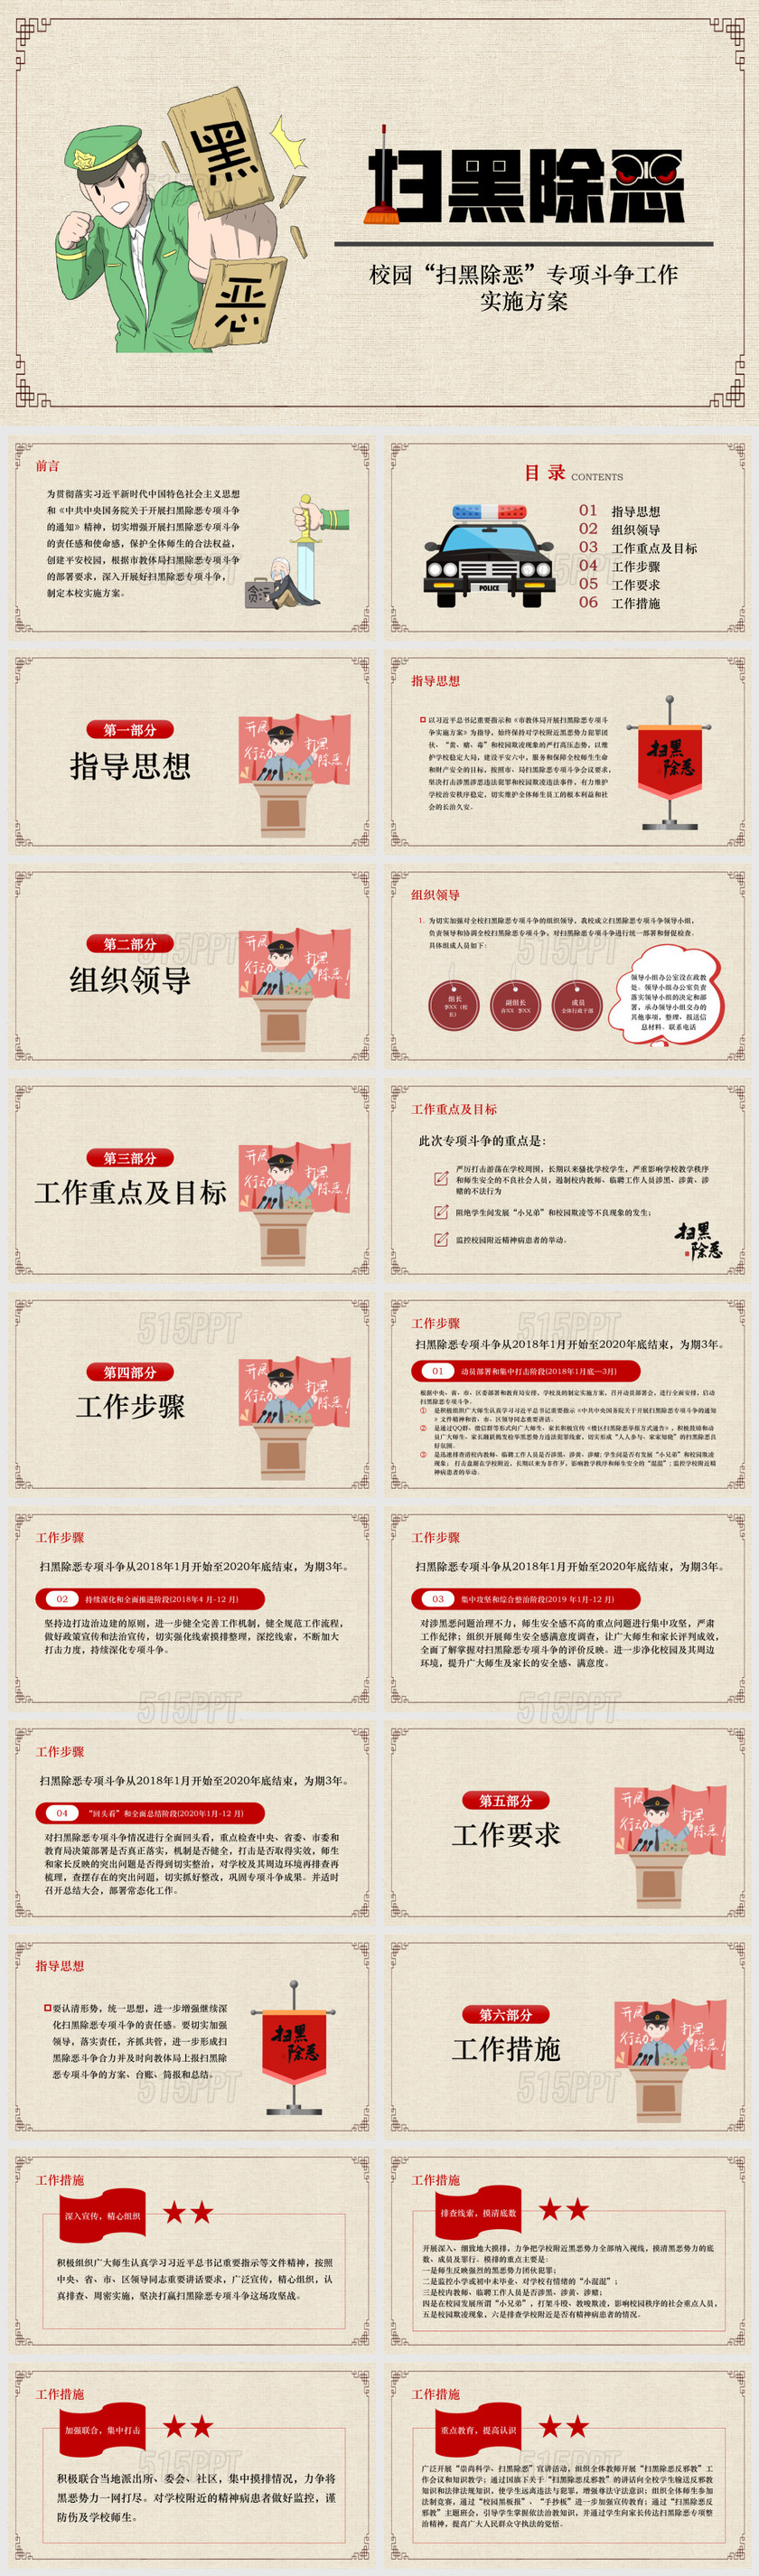 中国风扫黑除恶校园扫黑除恶专项斗争工作实施方案PPT模板